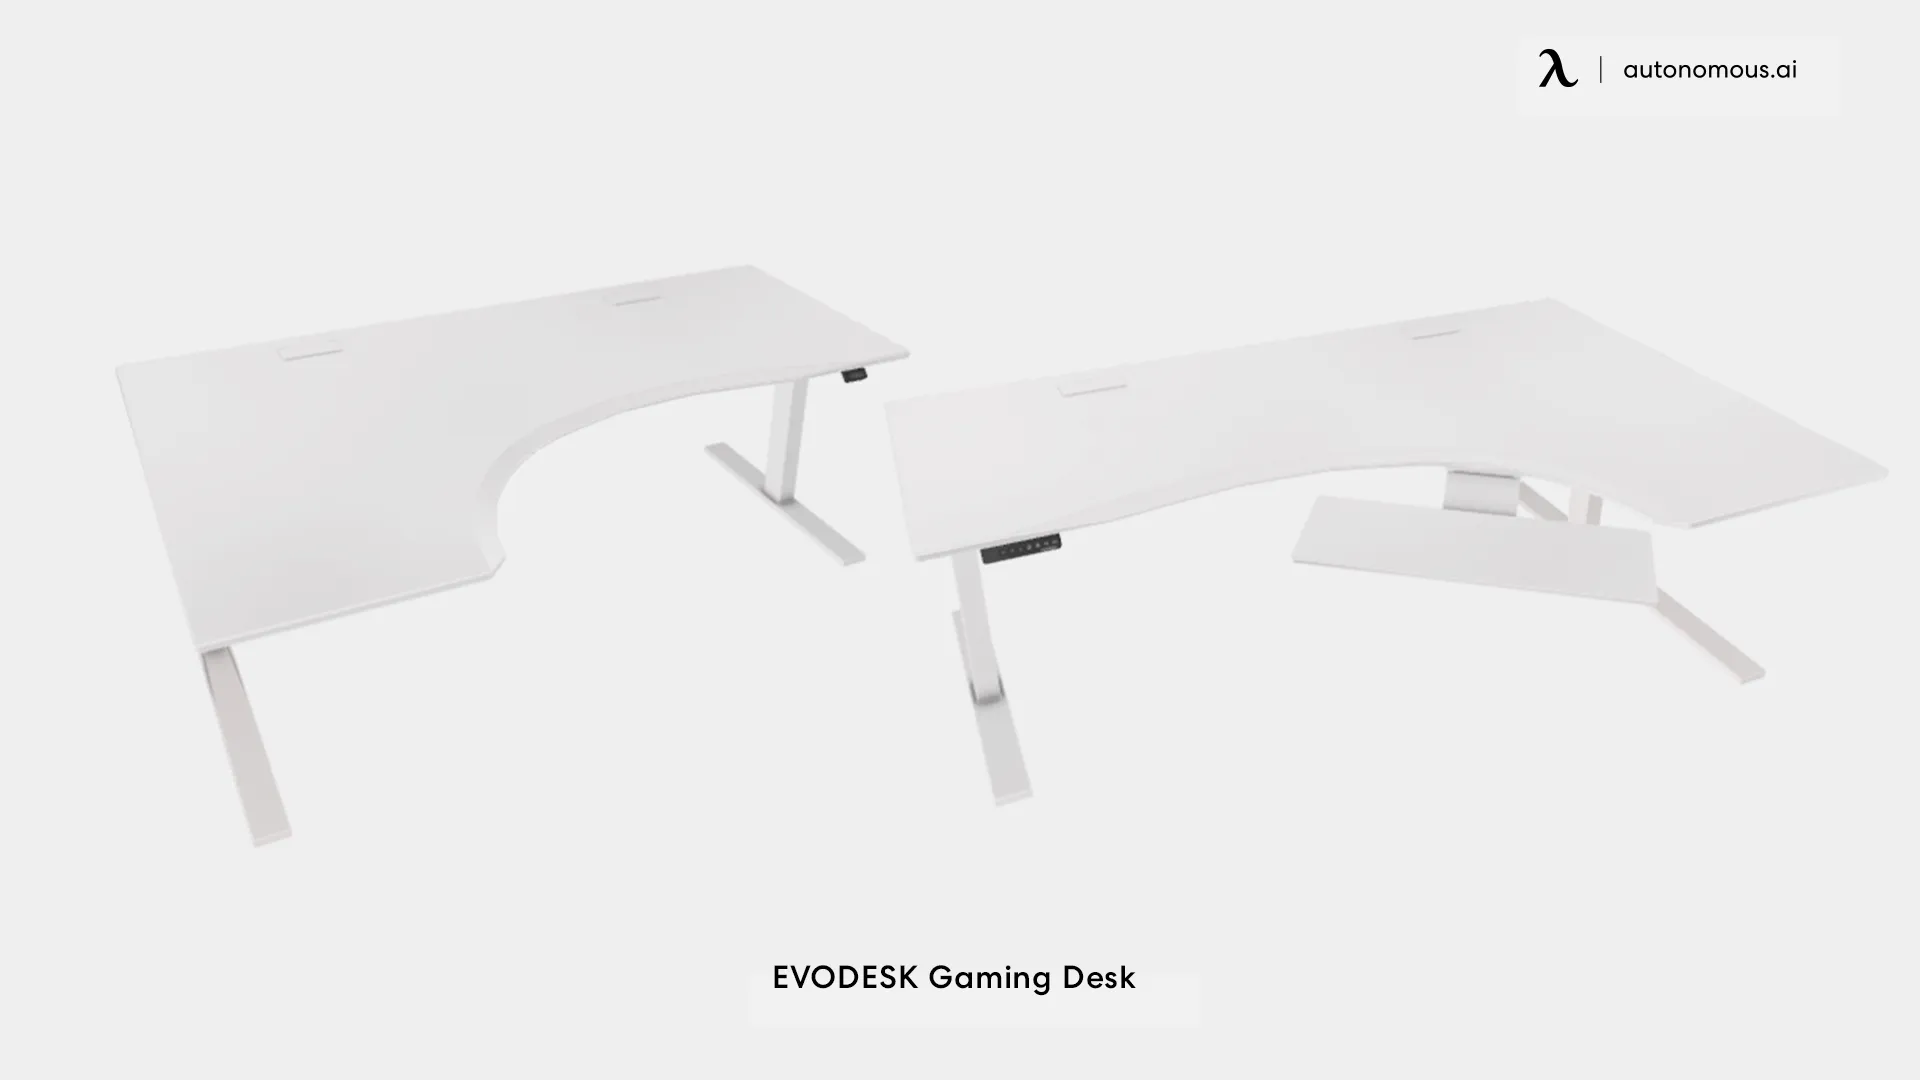 EVODESK Gaming Desk